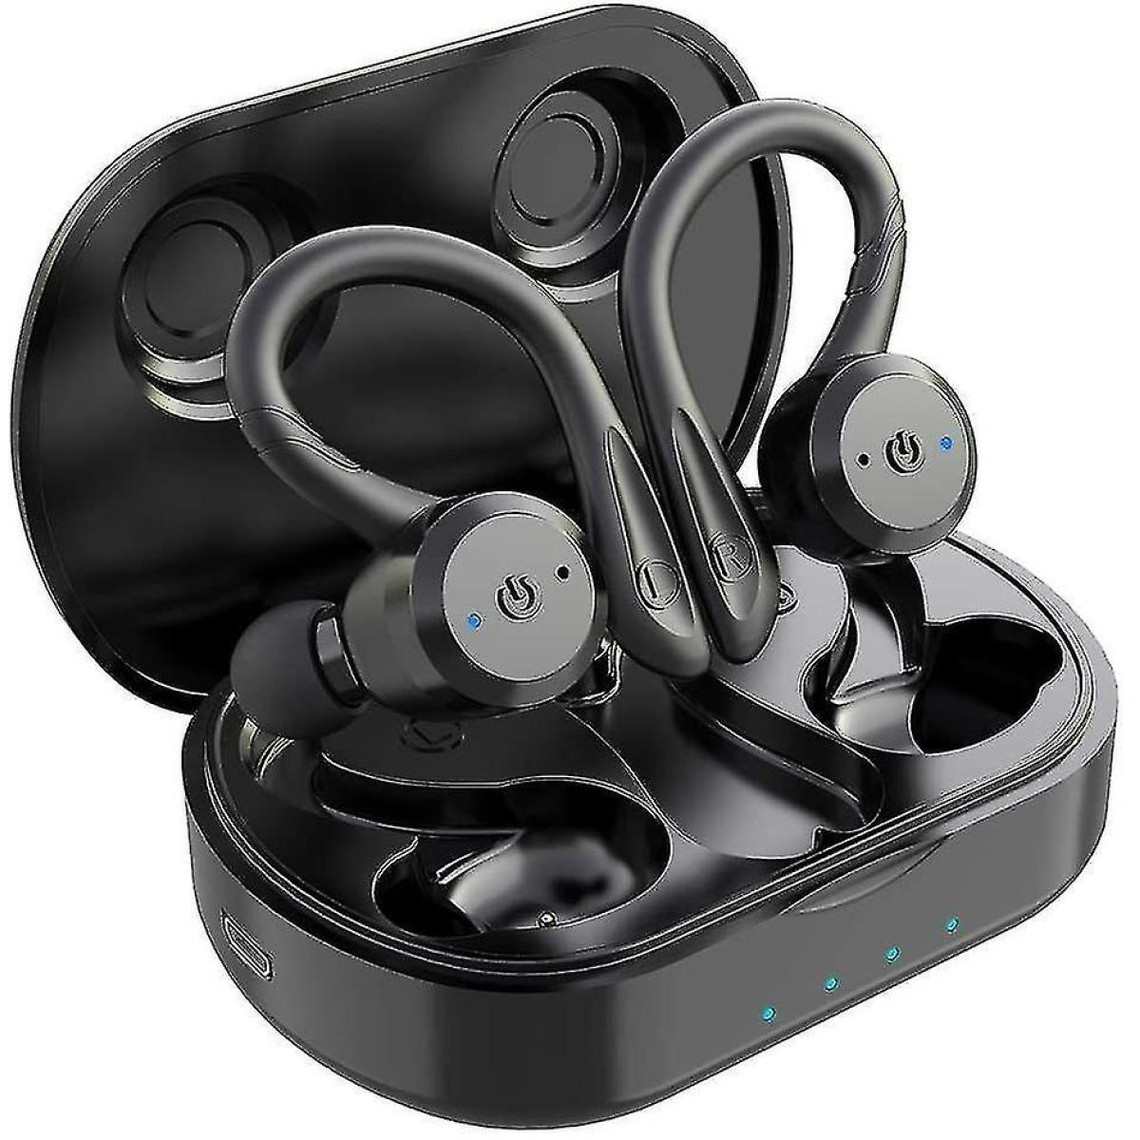 Ecouteurs intra-auriculaires Universal Ecouteurs sport TWS casque True Wireless Bluetooth 5.0 Sports Earbuds, IPX7 étanche à l'eau machine rouge @